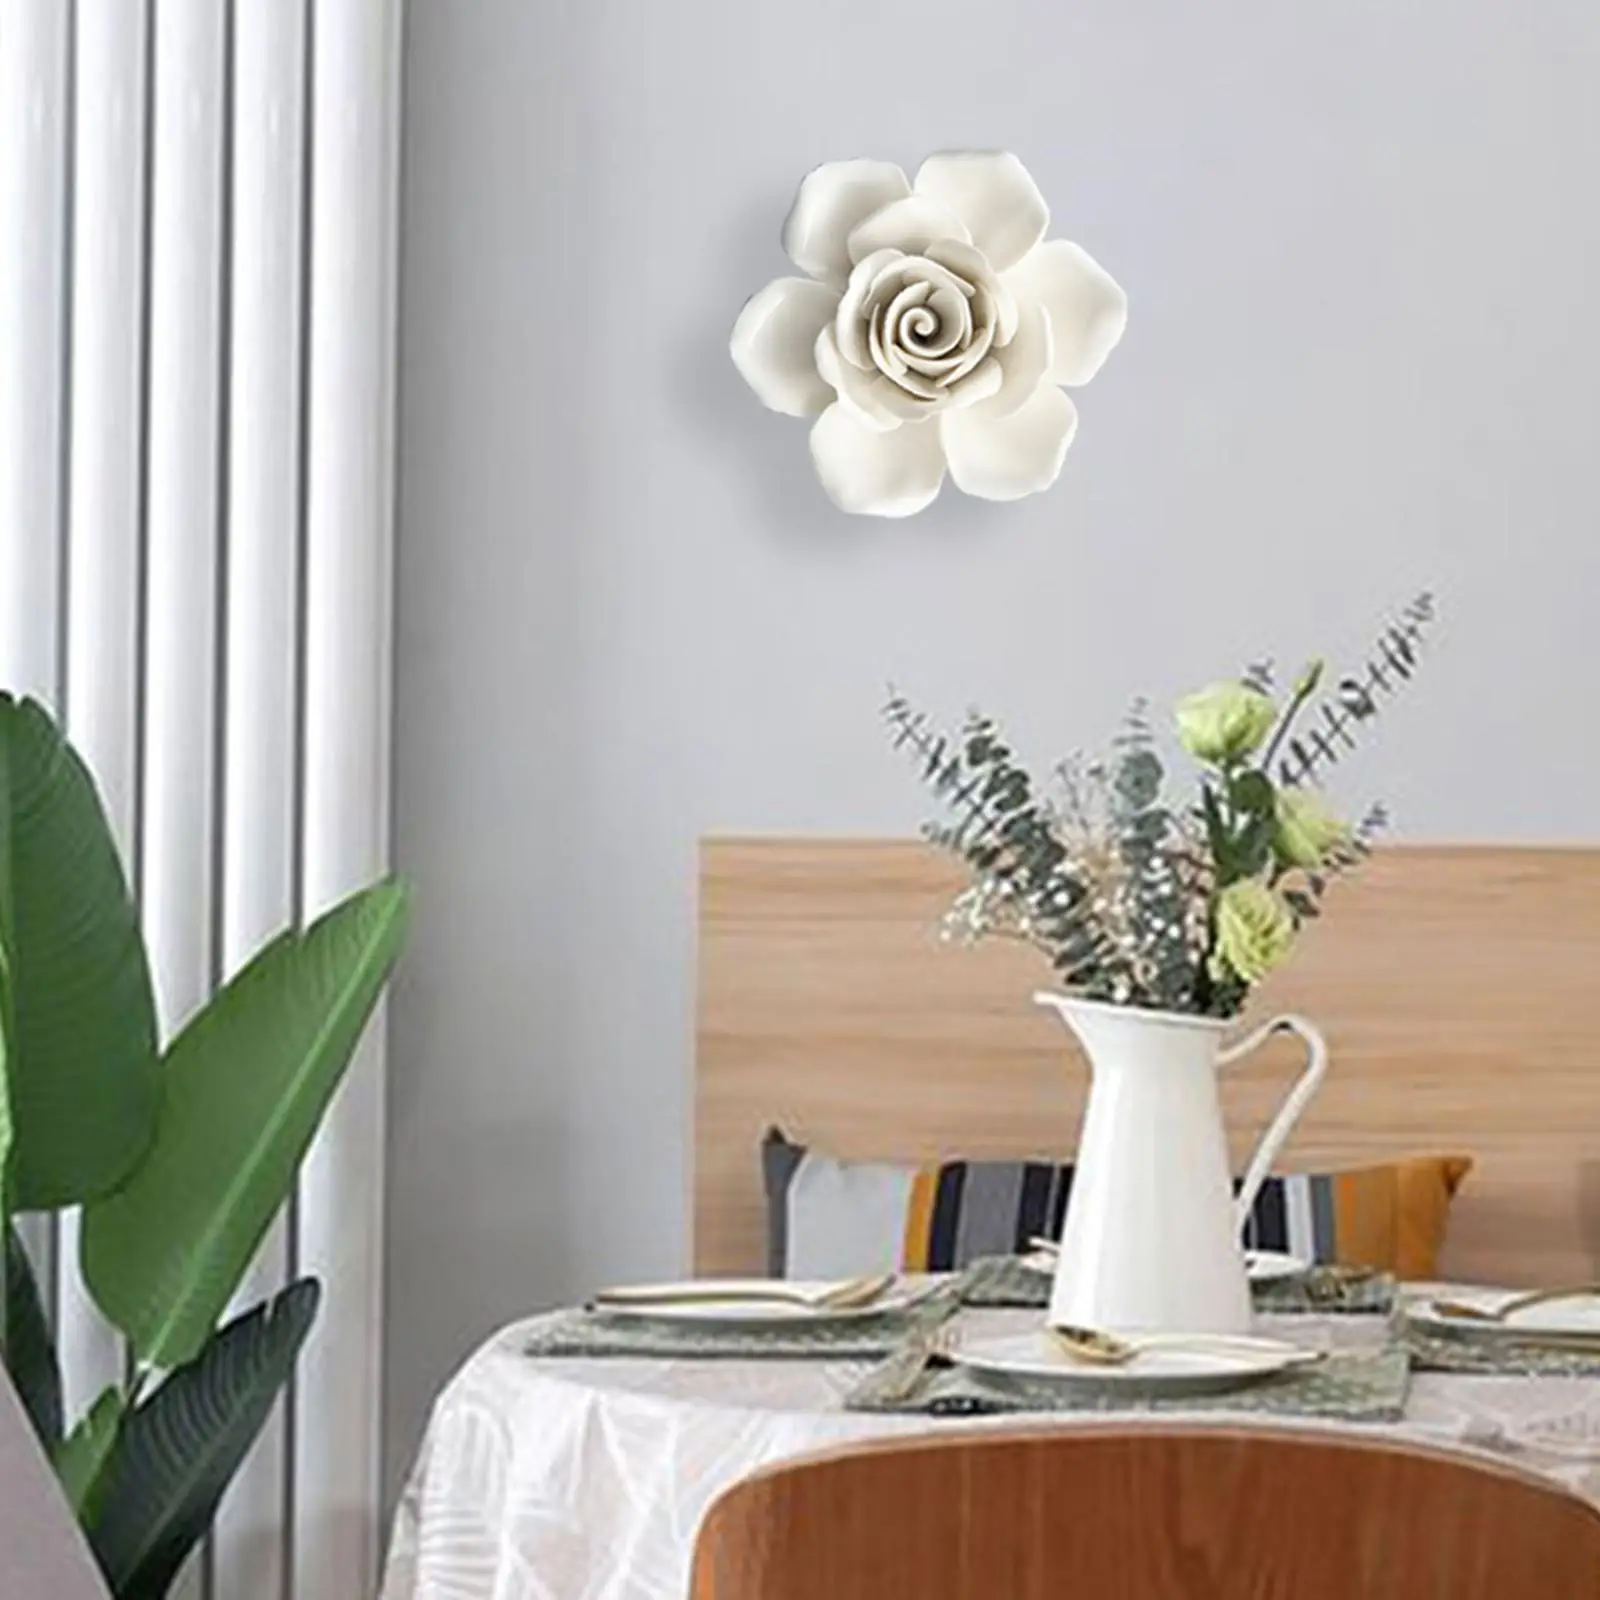 Hanging Wall 3D Ceramic Flower White Wall Art 3D Home Decor Arts Sculpture Artificial Flower for Bathroom Garden Hallway Office